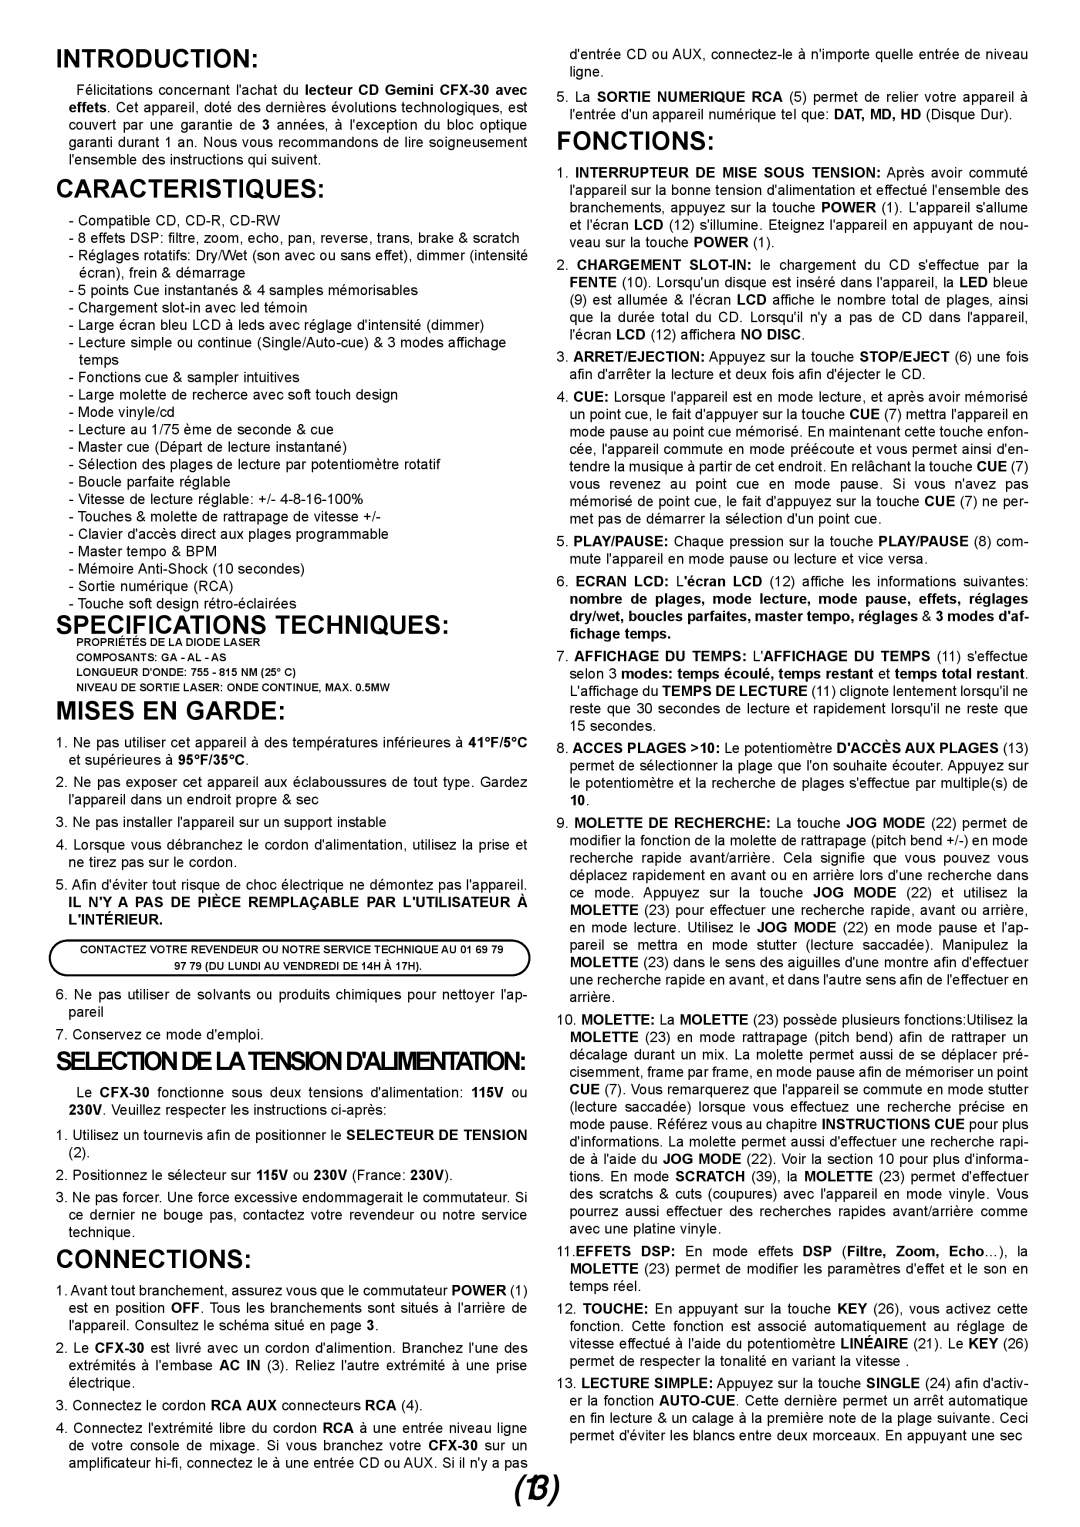 Gemini CFX-30 manual Caracteristiques, Specifications Techniques, Mises En Garde, Fonctions, Introduction, Connections 